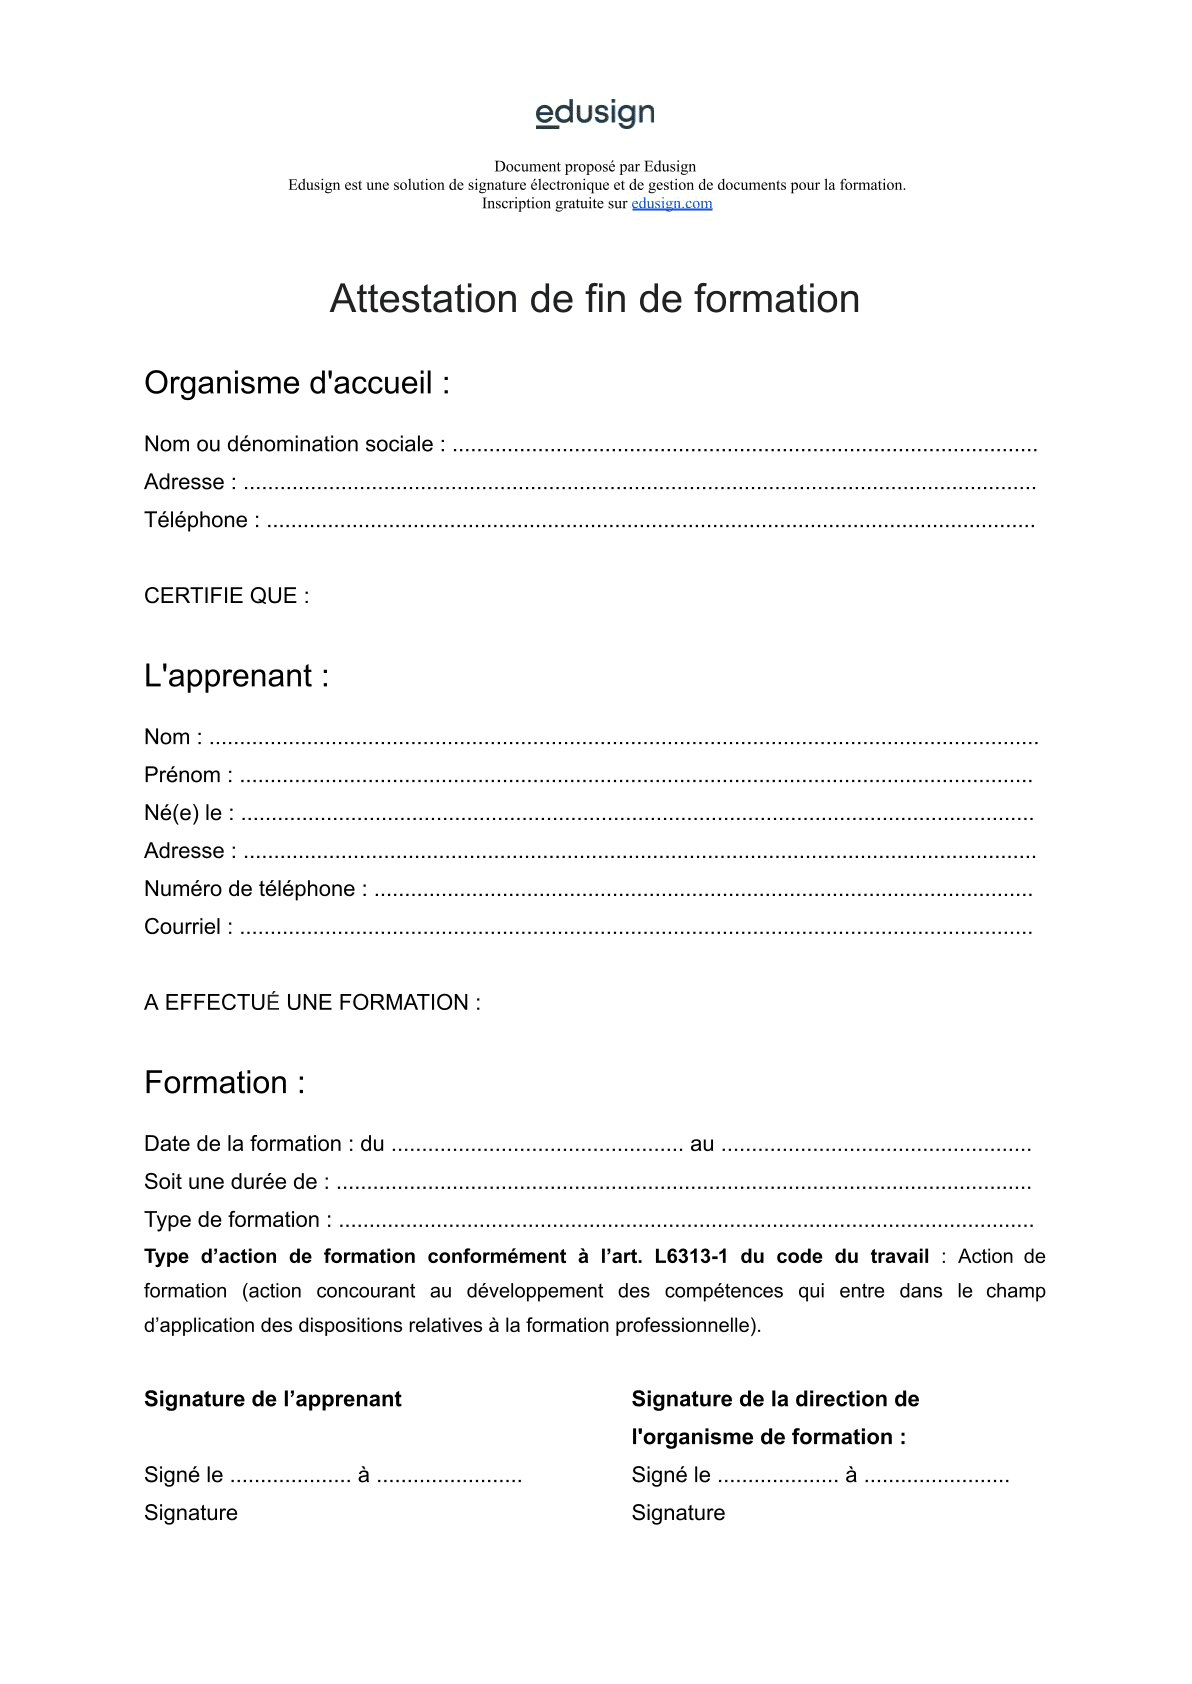 Illustration de document à télécharger et imprimer en pdf, word et excel